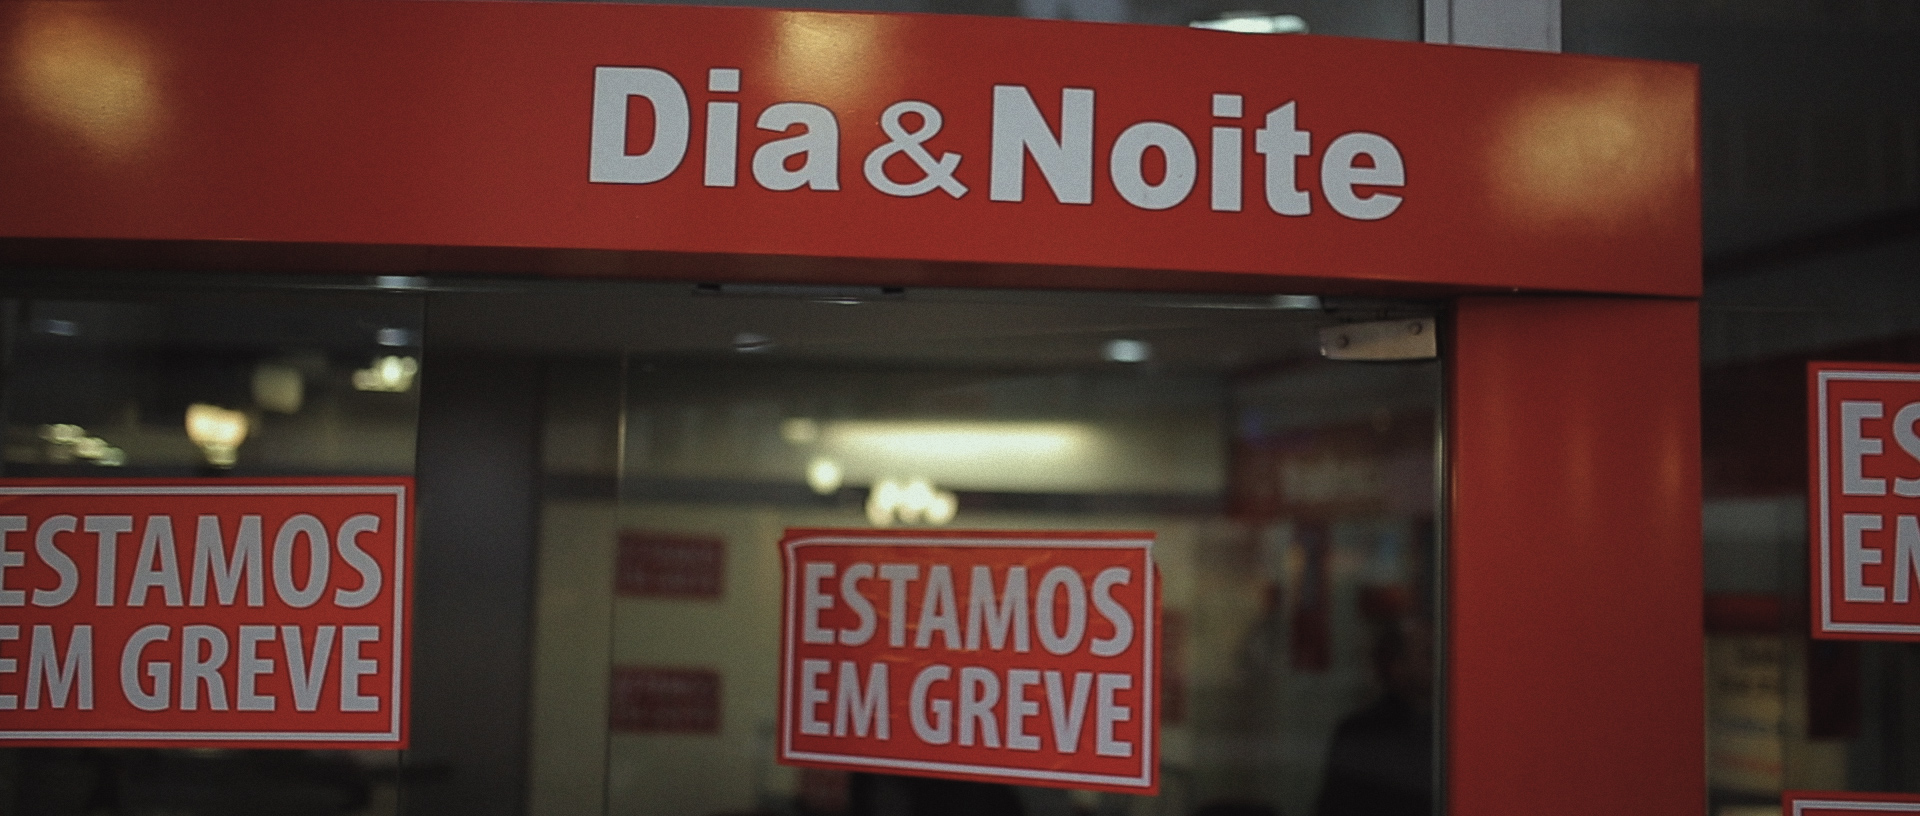 o-que-voce-espera-ricardo-franzen-lovefreedommadness-documentario-brasileiro-brasil-curitiba-ruas-todo-mundo-espera-alguma-coisa-aeroporto-avioes-aviao-decolagem-centro-museu-producao-de-filmes-curitiba-20.jpg